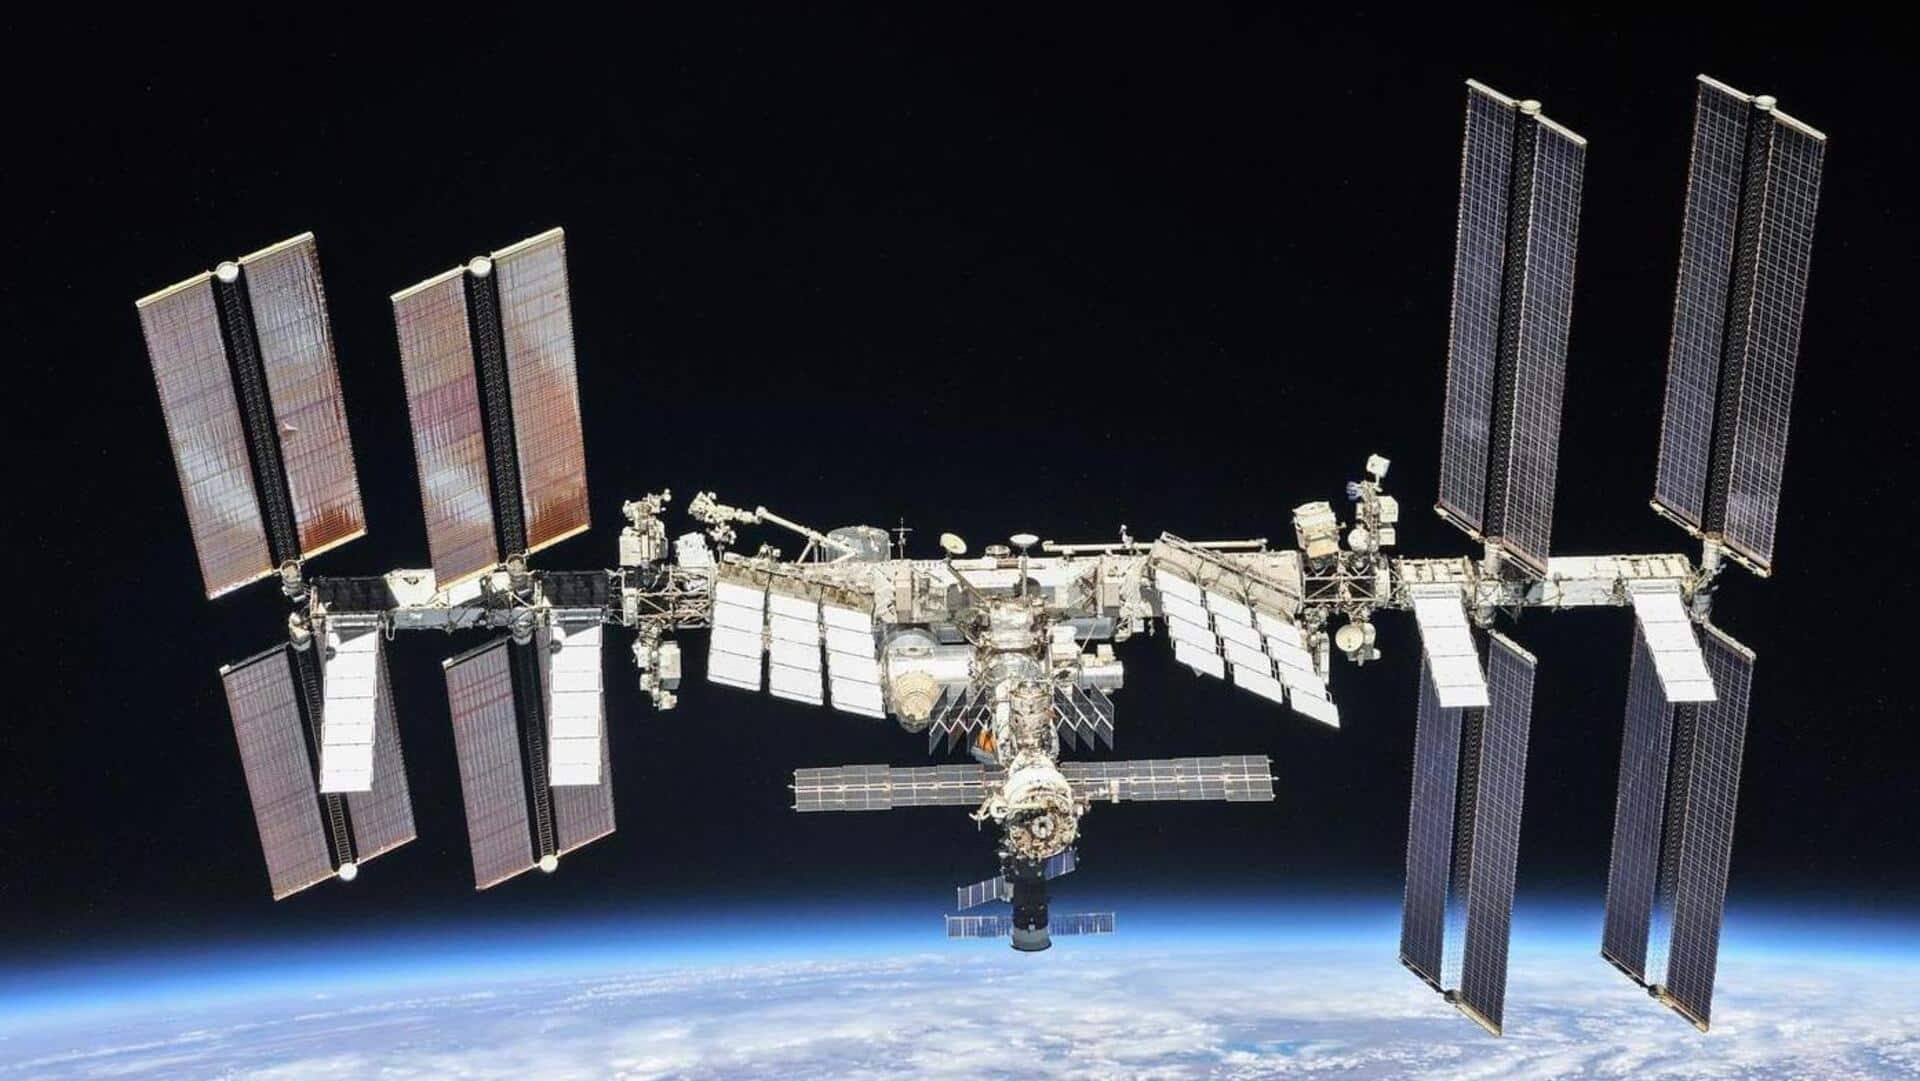 नासा मनाएगी अंतरराष्ट्रीय स्पेस स्टेशन की 25वीं वर्षगांठ, ऐसे देख सकेंगे लाइव